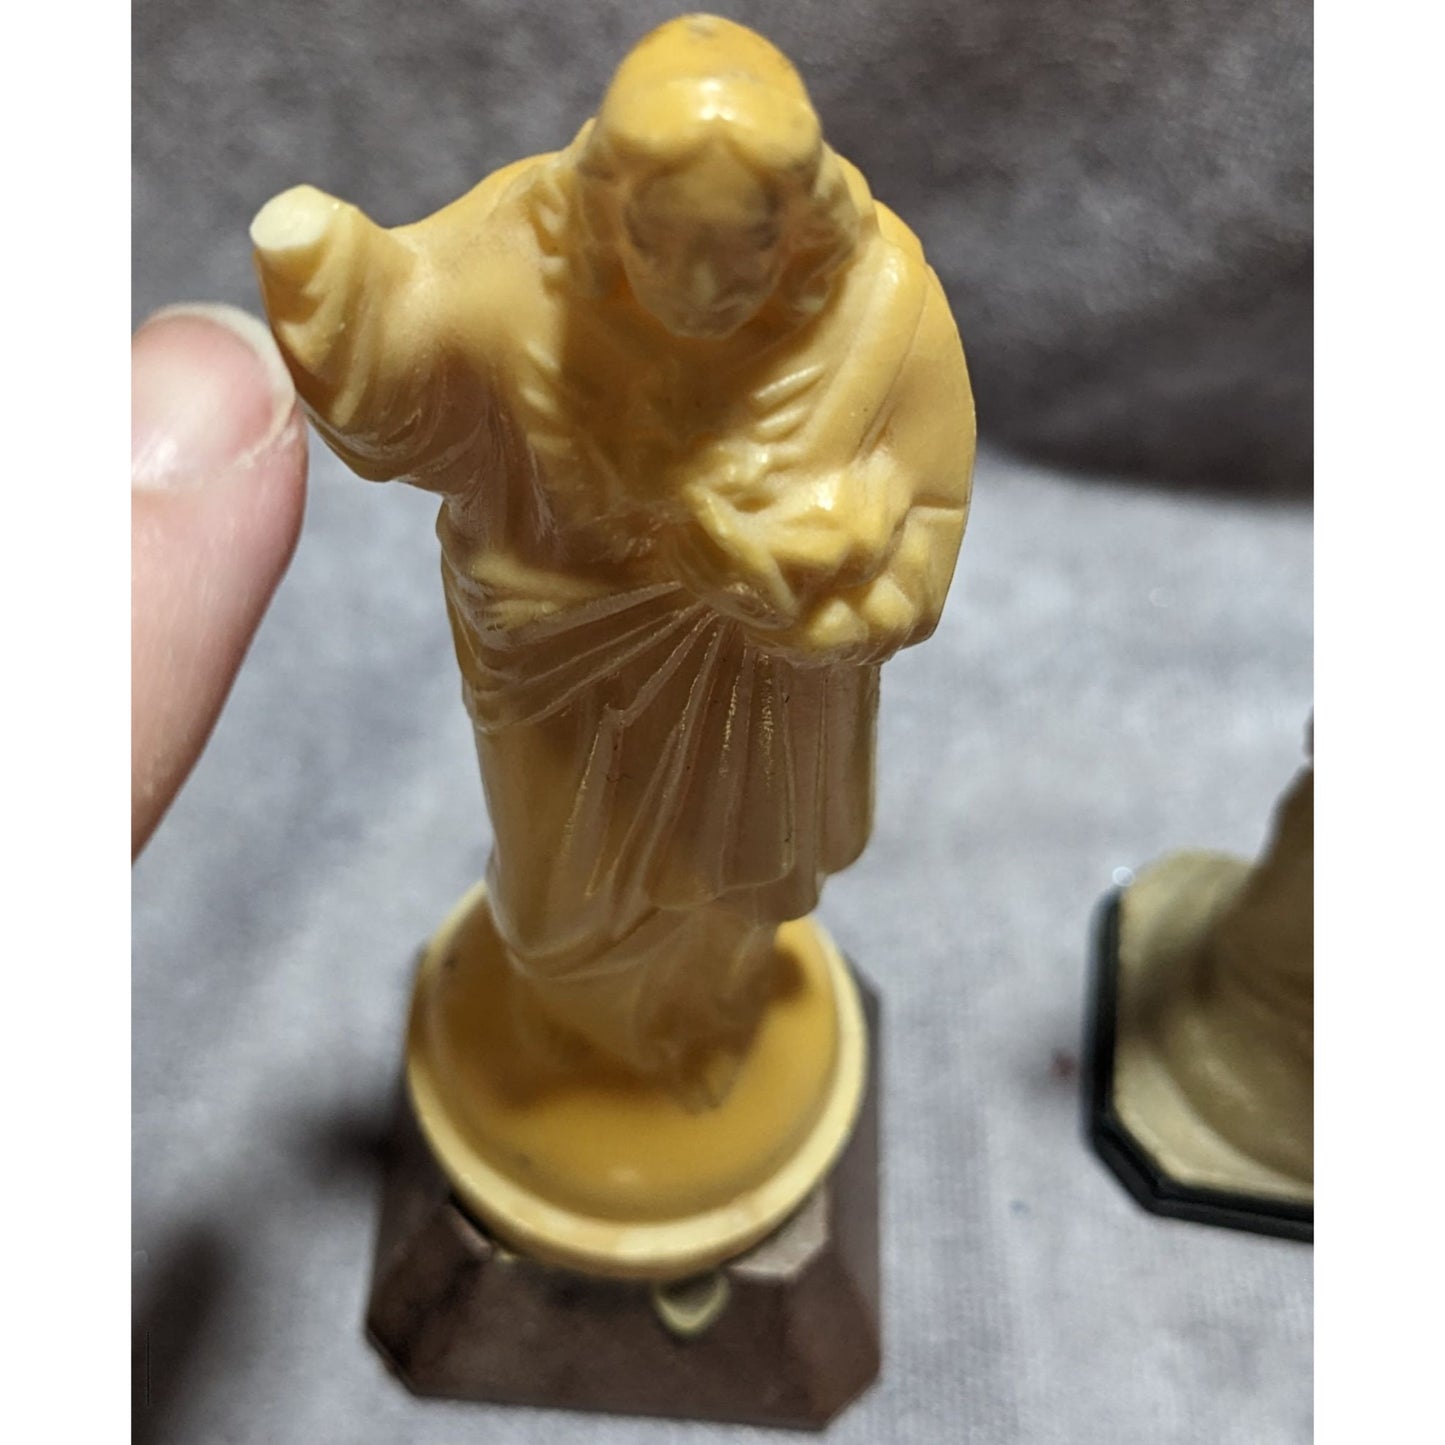 Vintage Religious Figure Bundle (5)